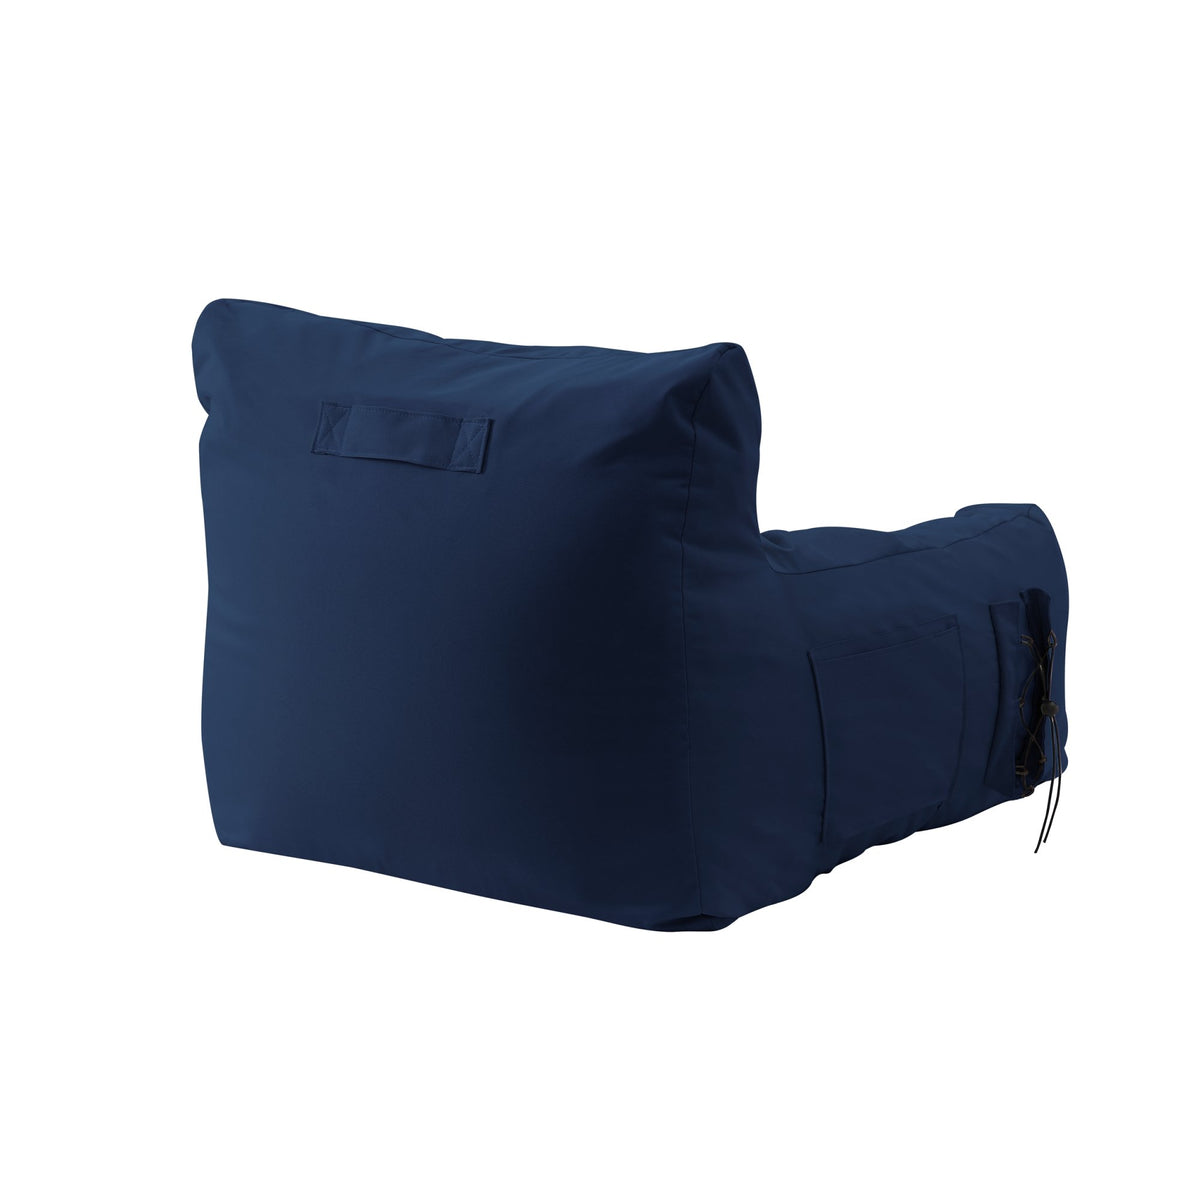 Bean Bag Chair/ Lounge Chair/ Memory Foam Chair/ Floor Arm Chair - Comfy Bean Bag Memory Foam Floor Chair